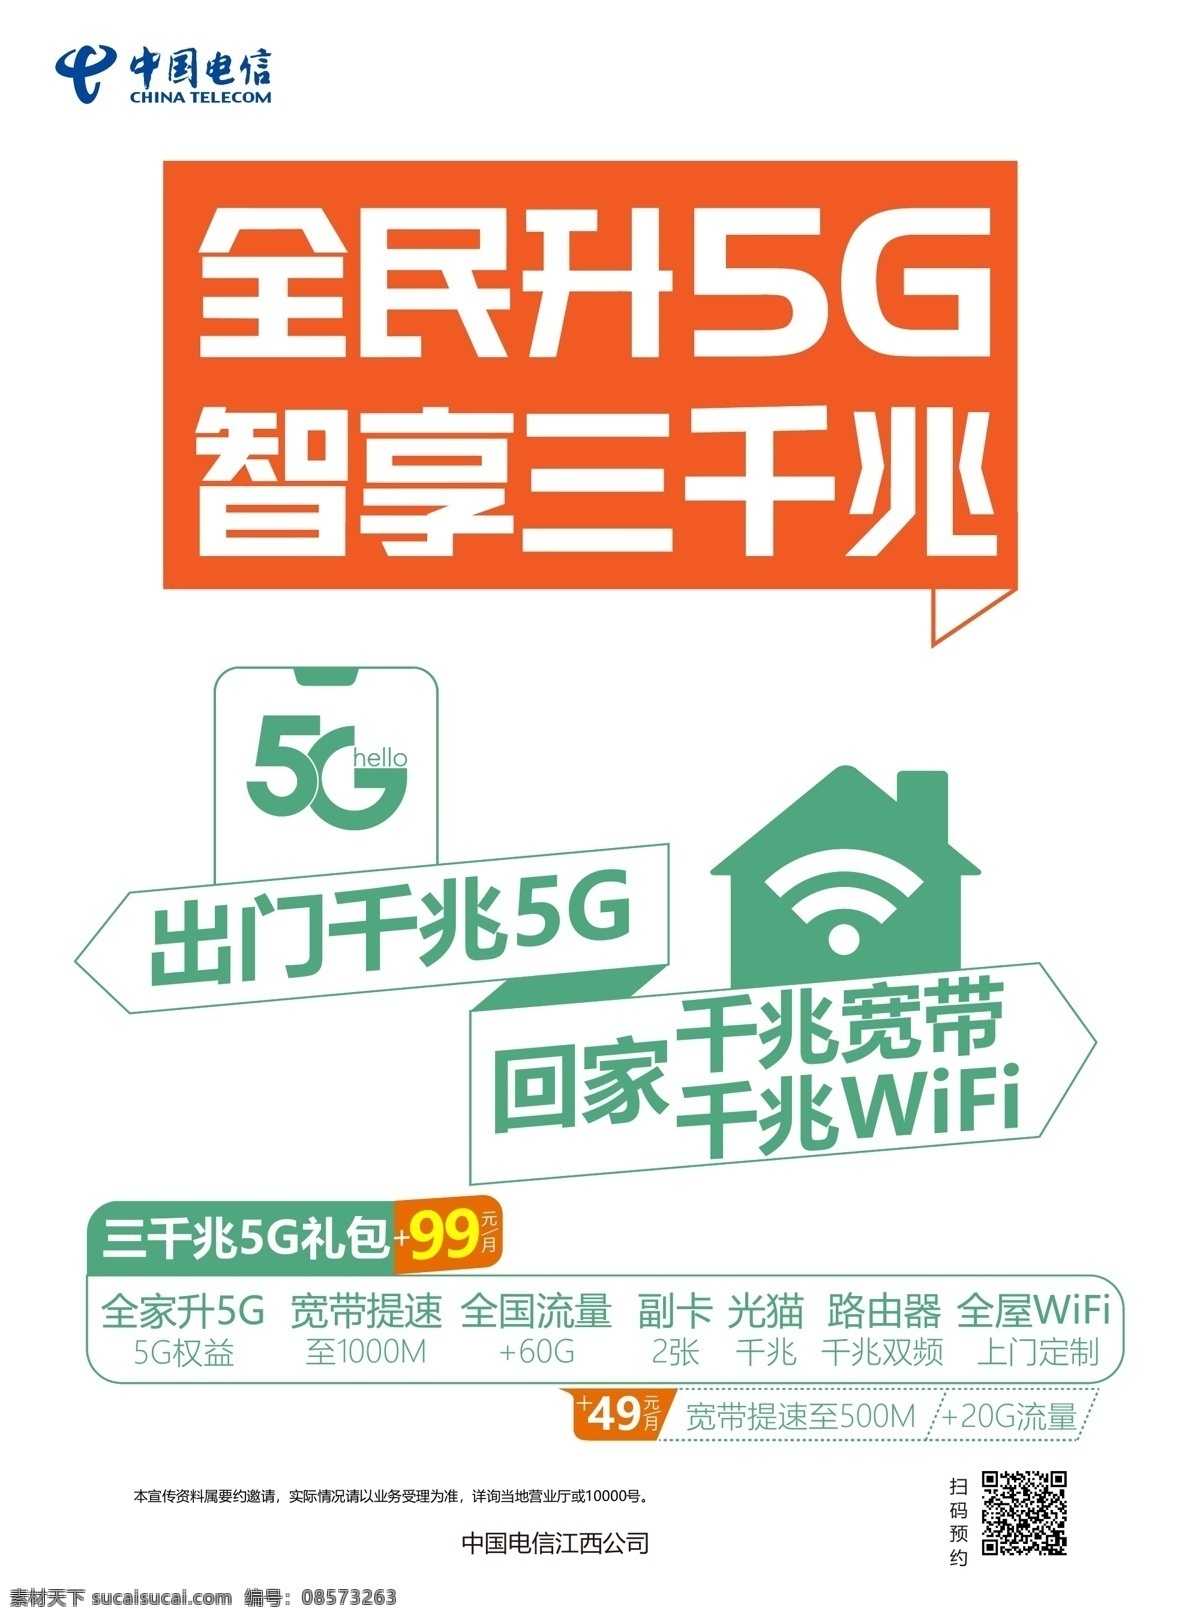 全民 升 5g 升5g wifi图标 电信logo 房子 卡通房子 房子造型